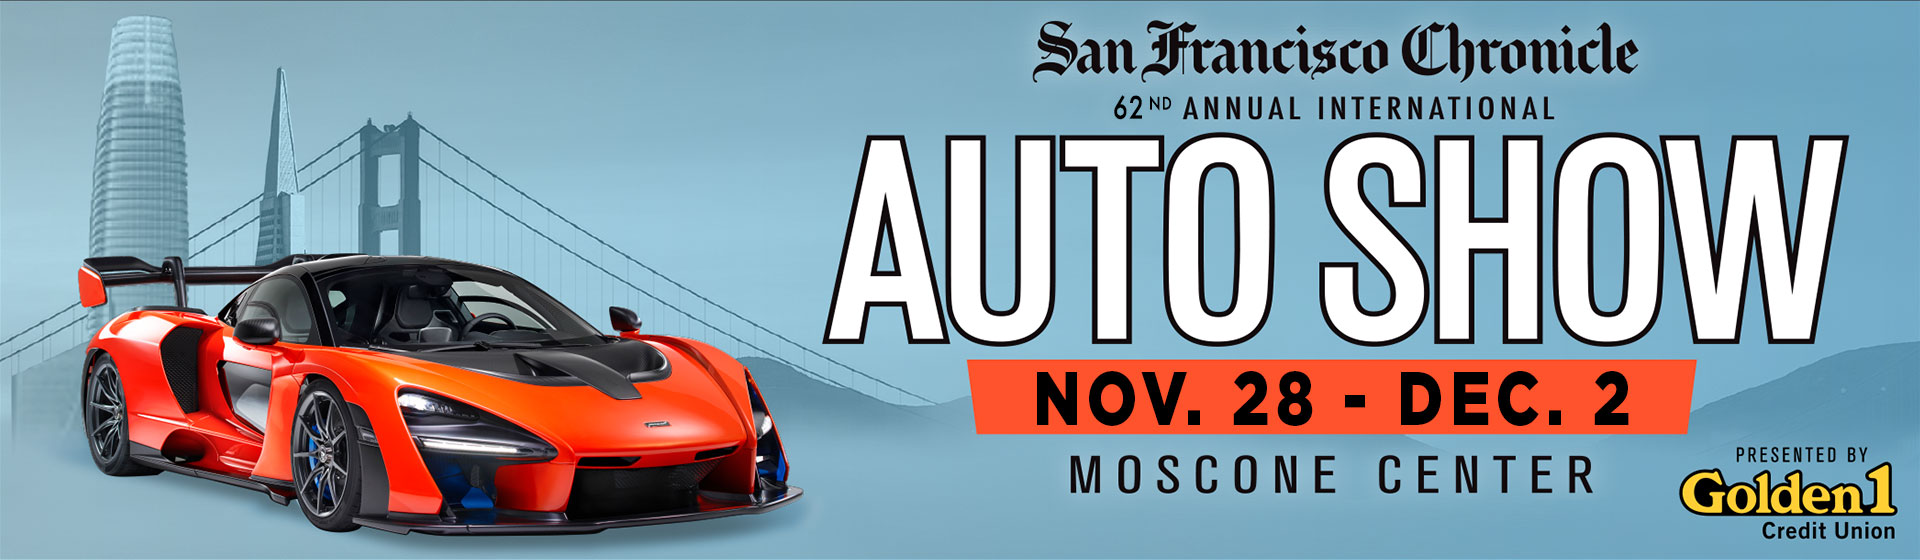 San Francisco Auto Show San Francisco Auto Show